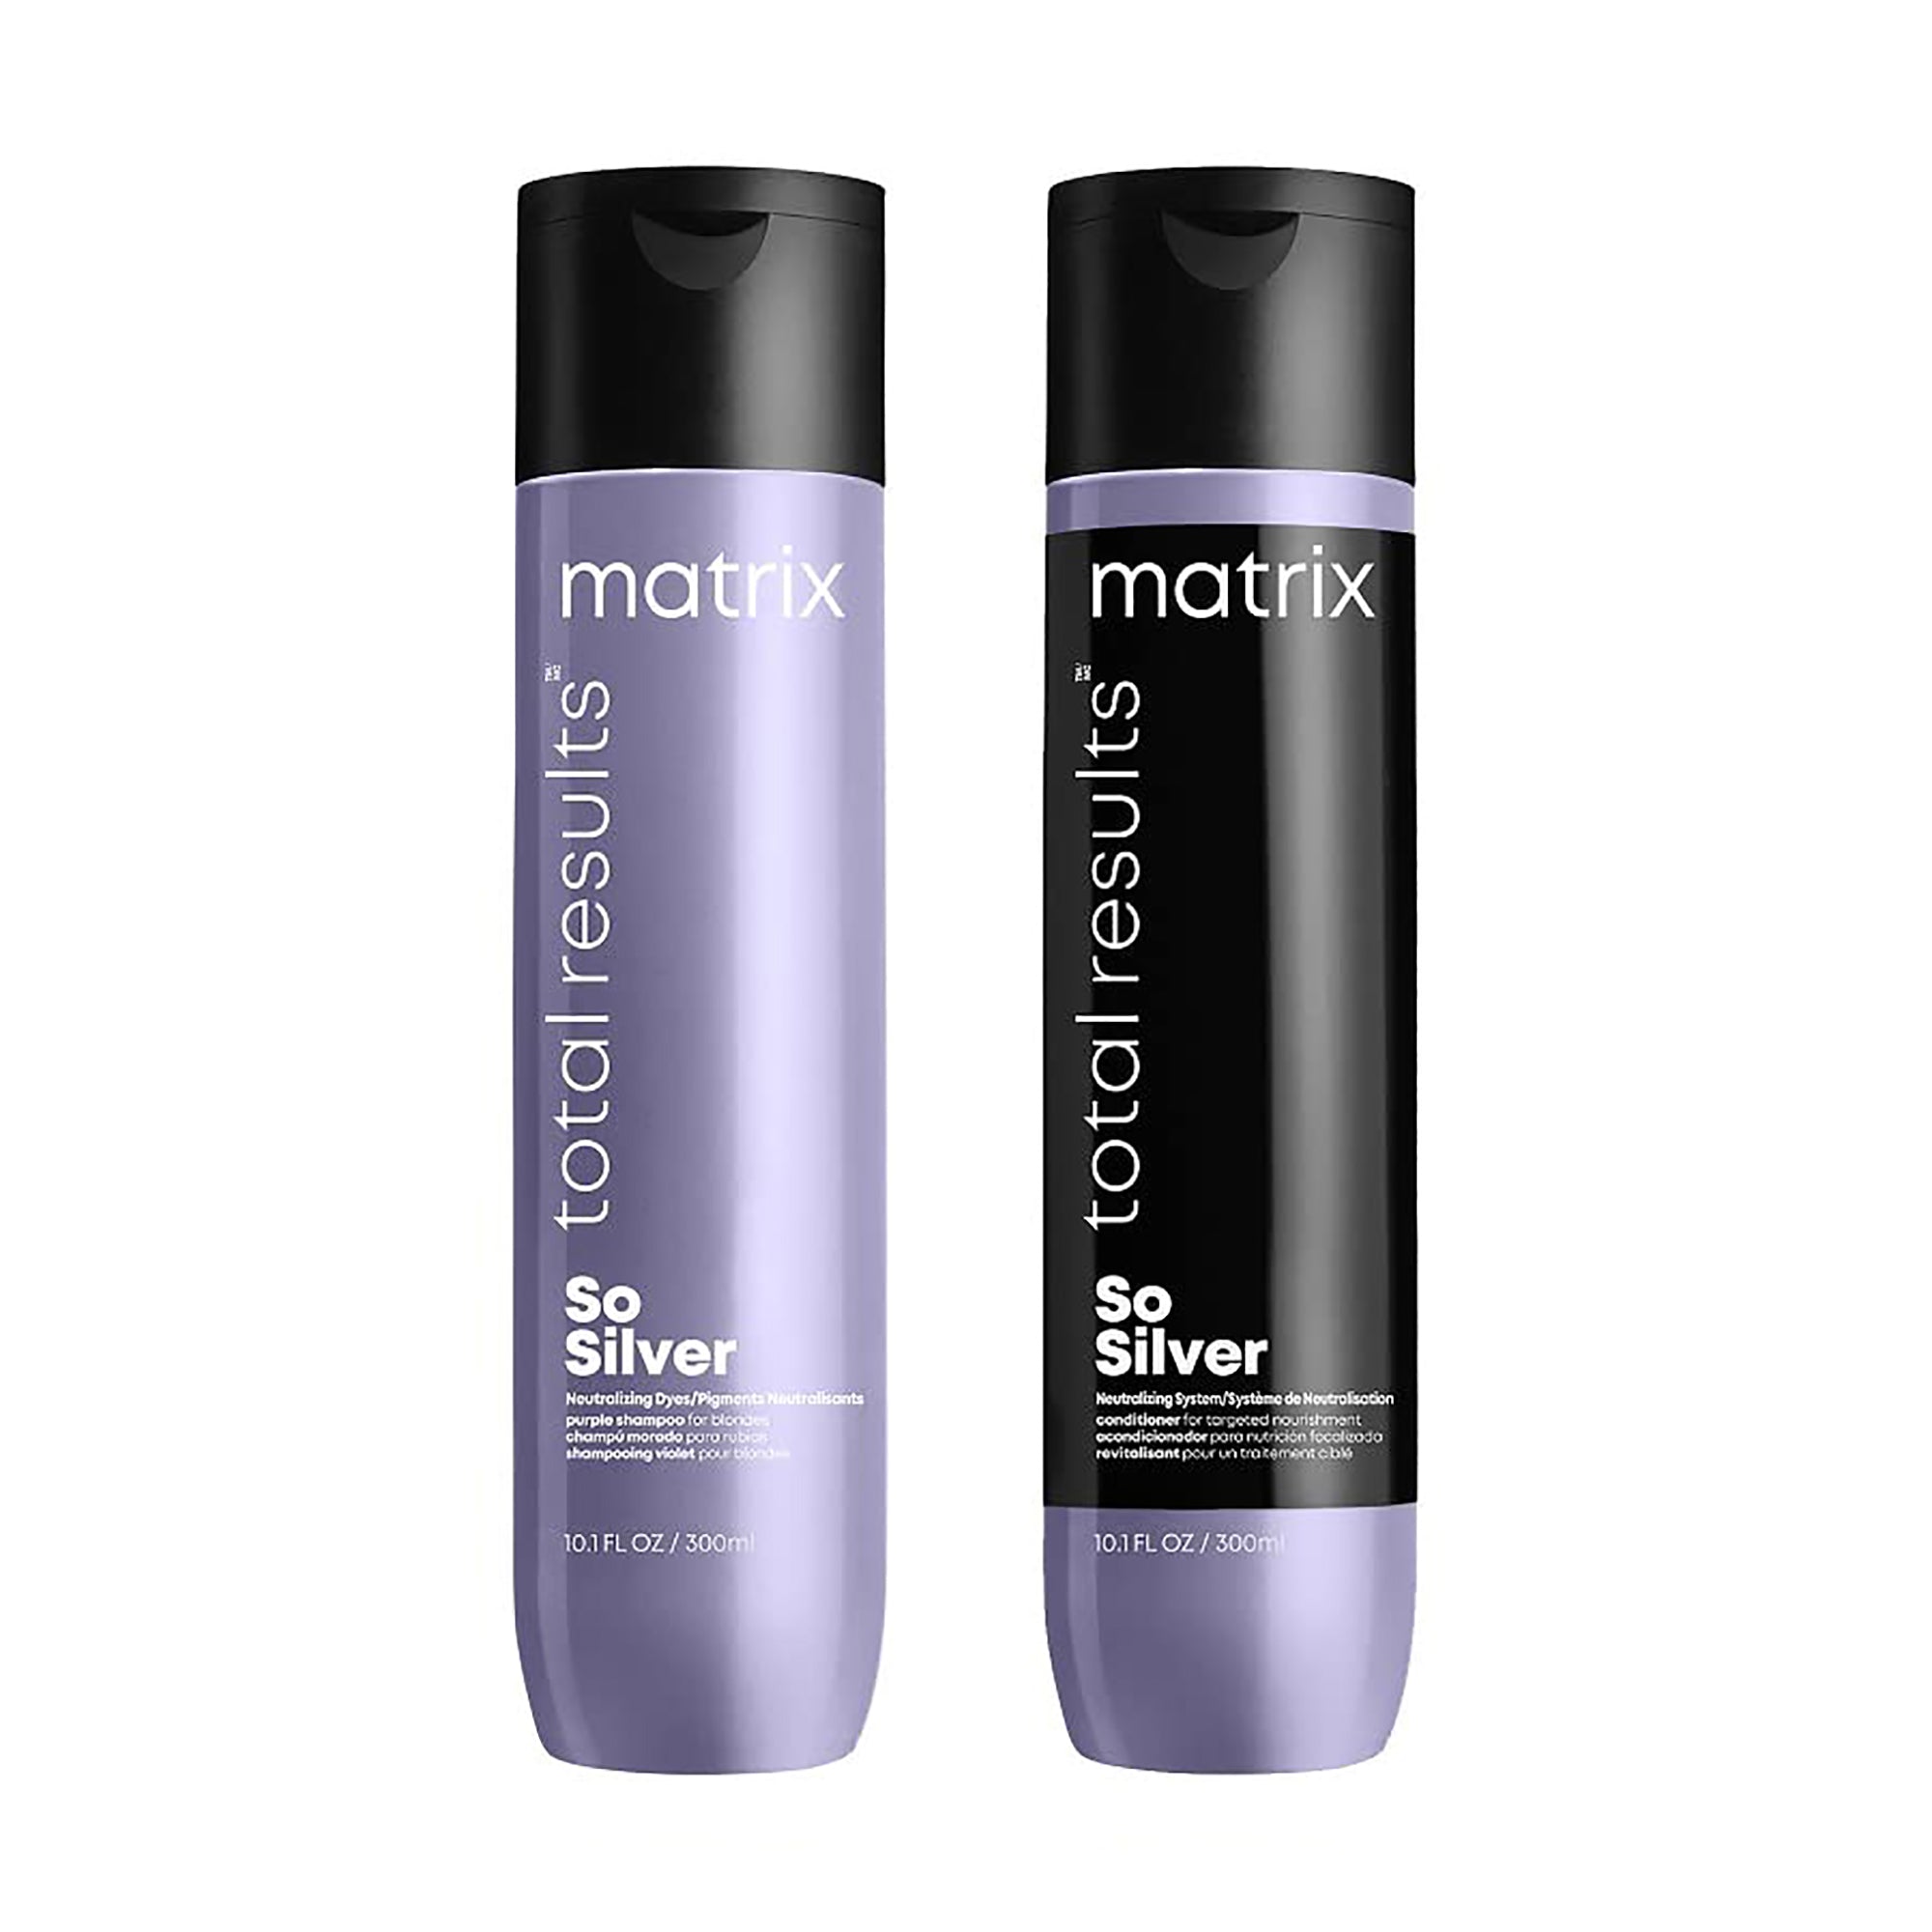 Matrix So Silver Shampoo and Conditioner Duo 10oz ($40 Value) / 10OZ